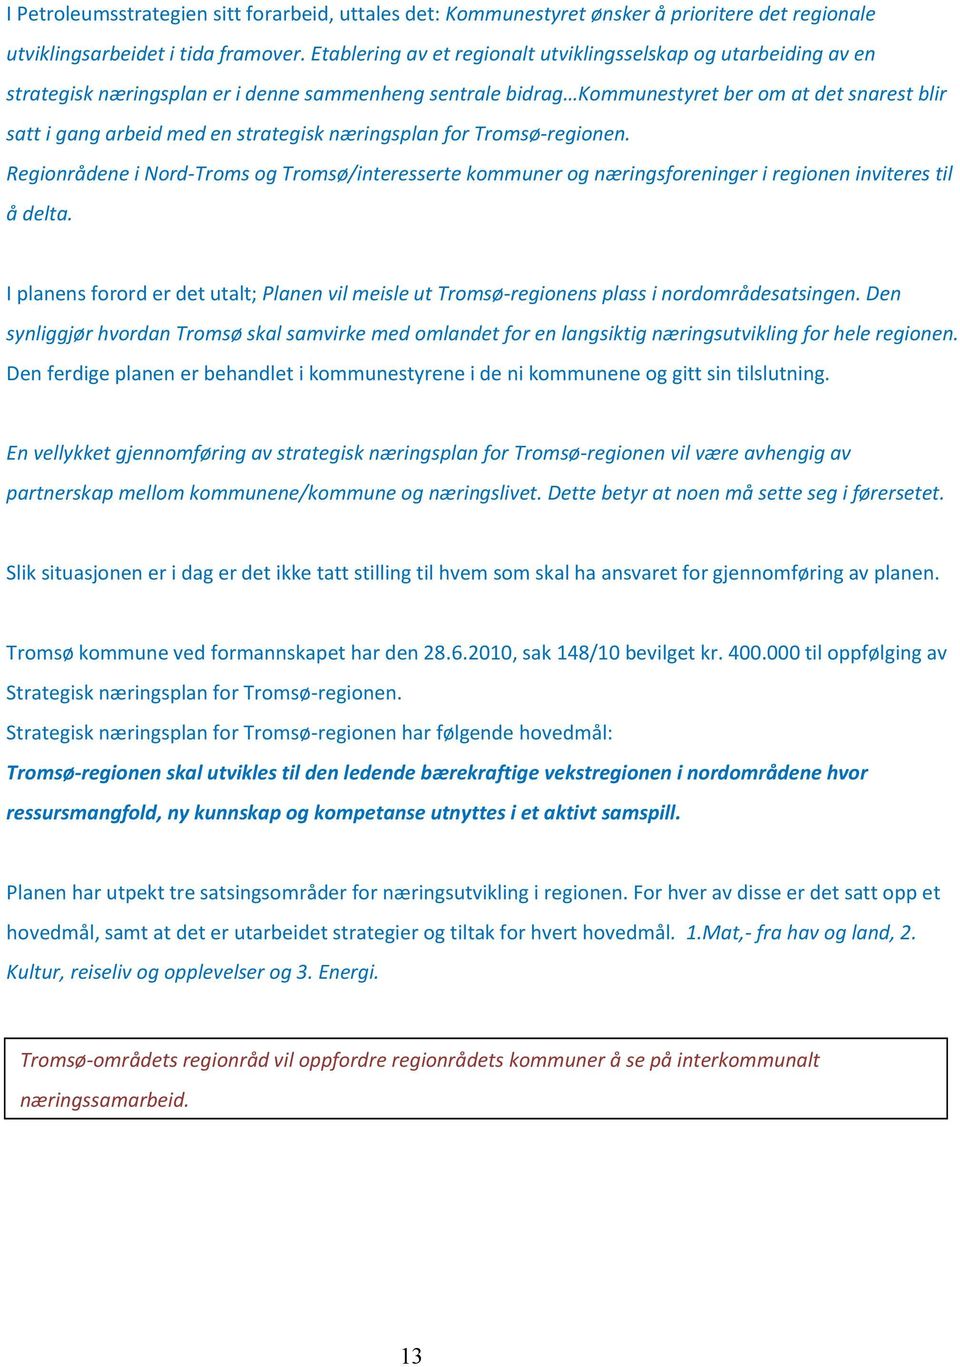 strategisk næringsplan for Tromsø-regionen. Regionrådene i Nord-Troms og Tromsø/interesserte kommuner og næringsforeninger i regionen inviteres til å delta.